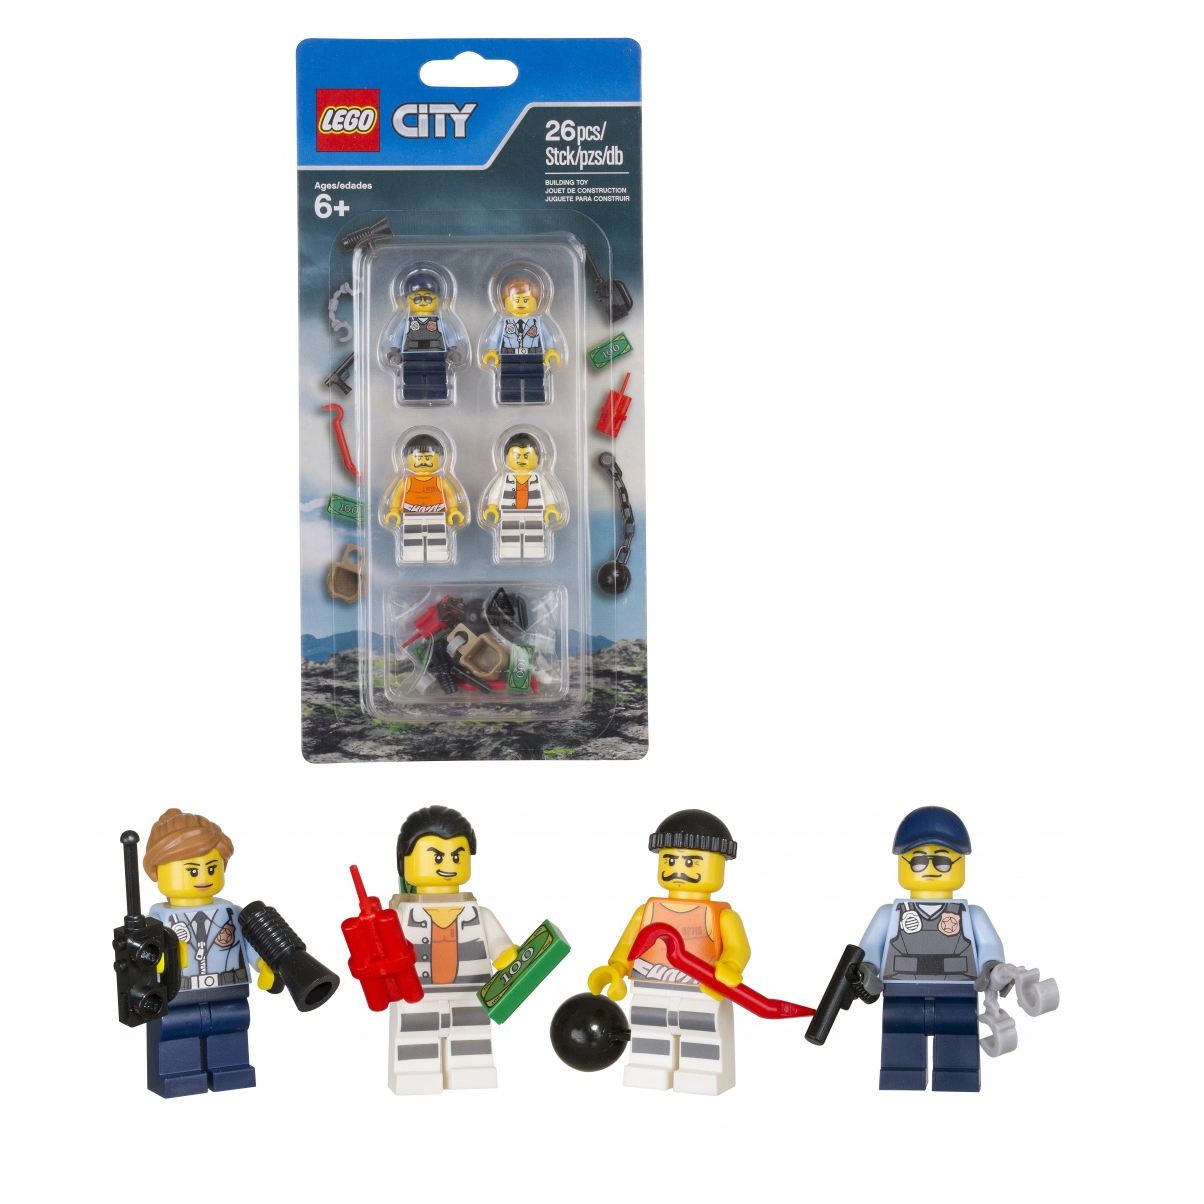 LEGO City 853570 Полицейские и арестанты